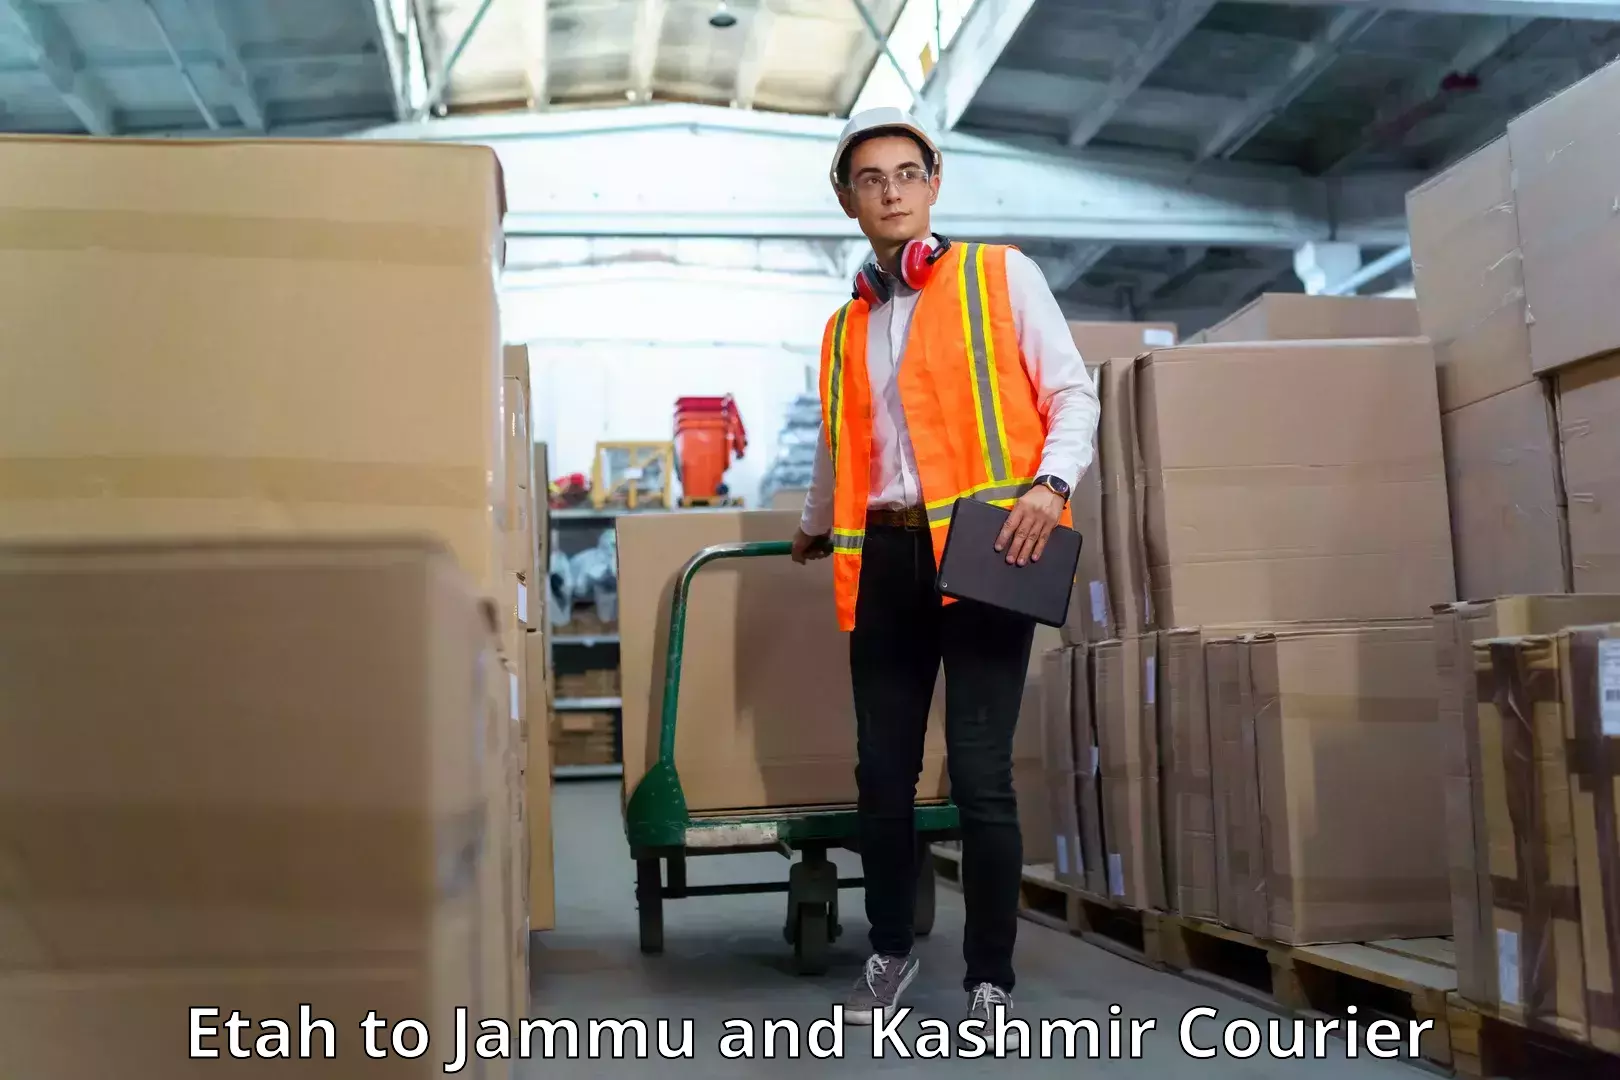 Premium courier services Etah to Jammu